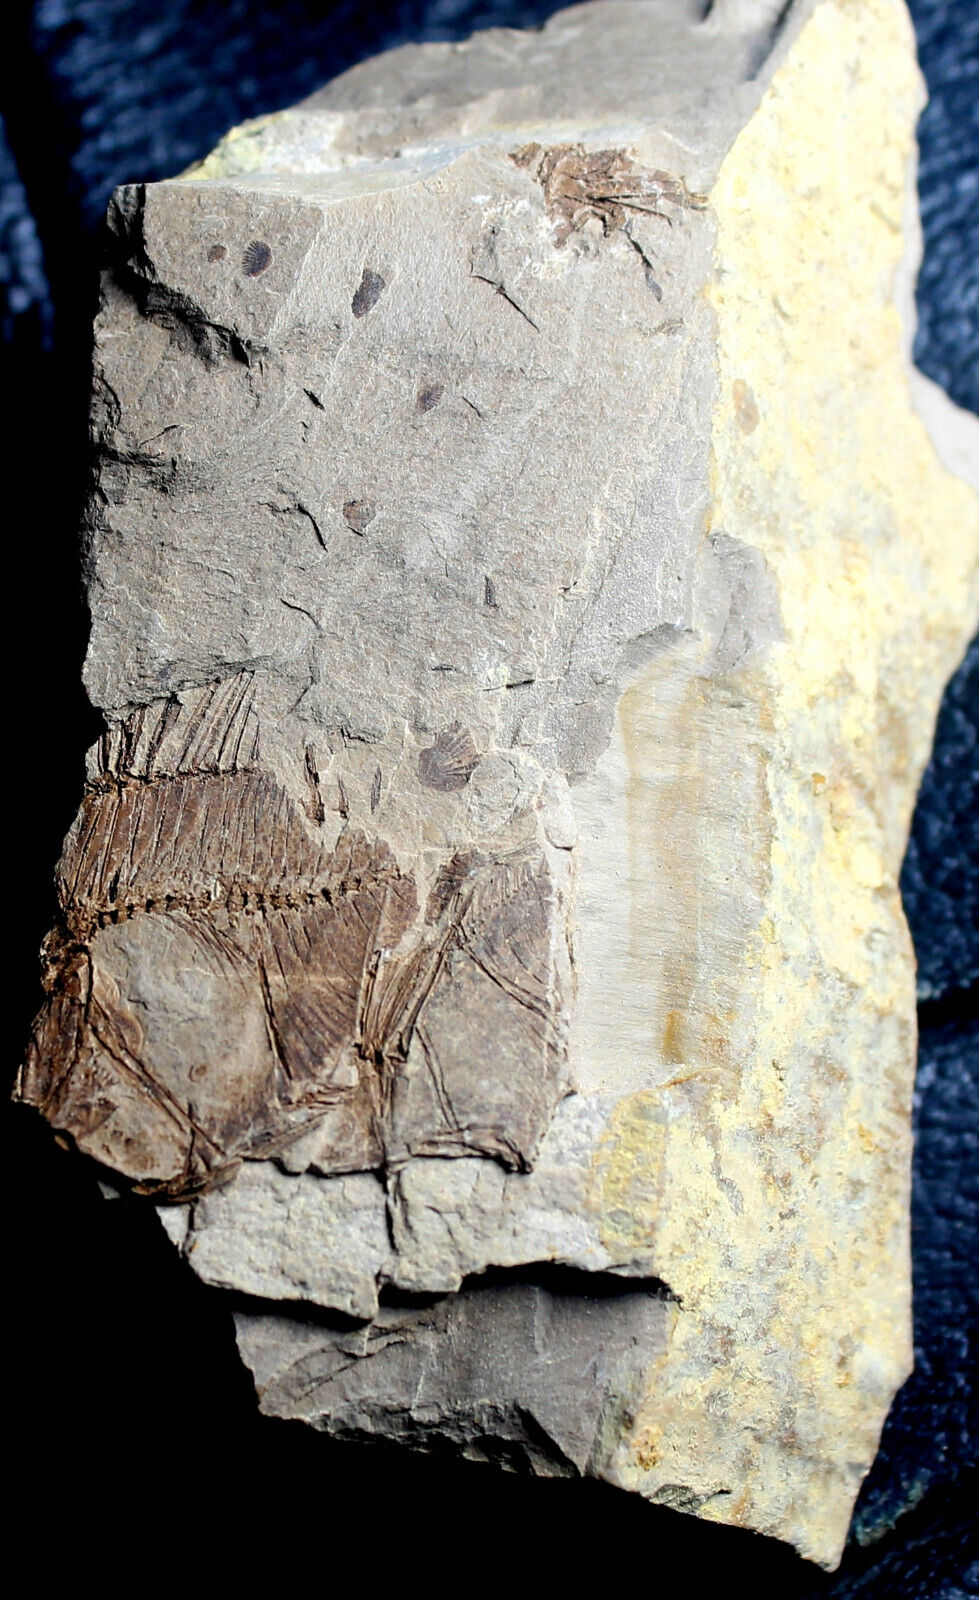 Capros radobojanus - Oligocene fossil fish